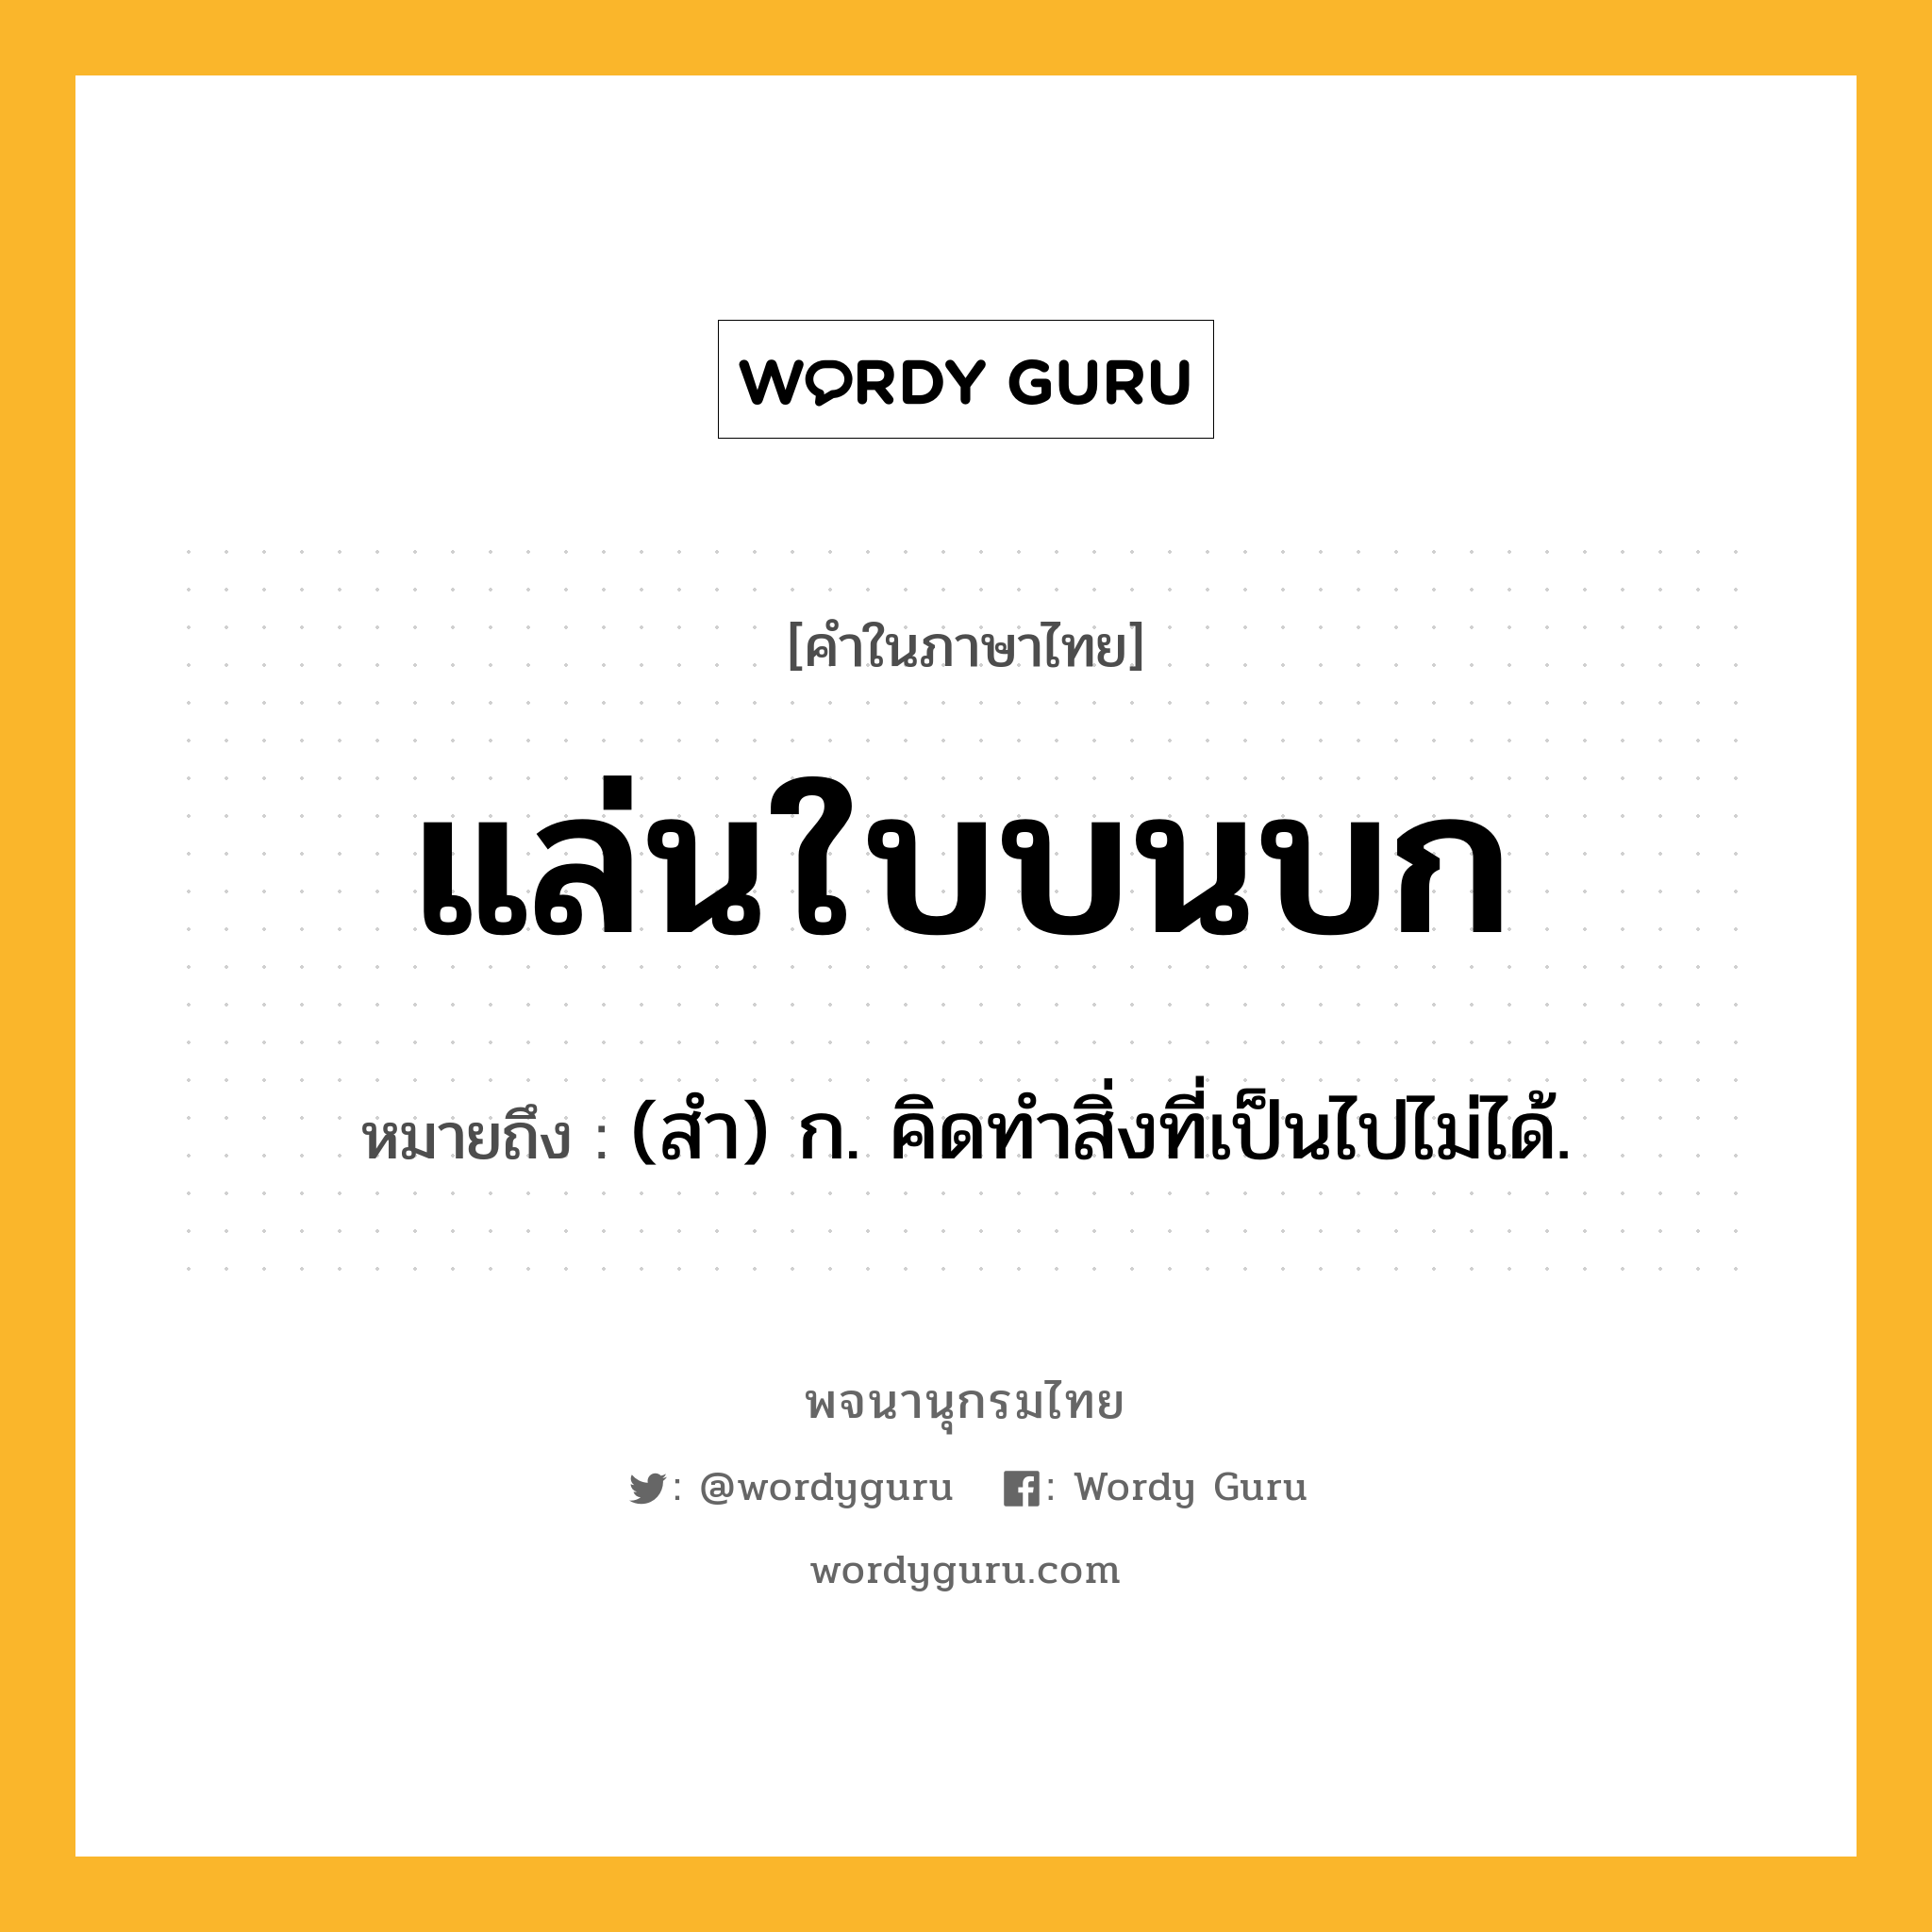 แล่นใบบนบก ความหมาย หมายถึงอะไร?, คำในภาษาไทย แล่นใบบนบก หมายถึง (สำ) ก. คิดทำสิ่งที่เป็นไปไม่ได้.